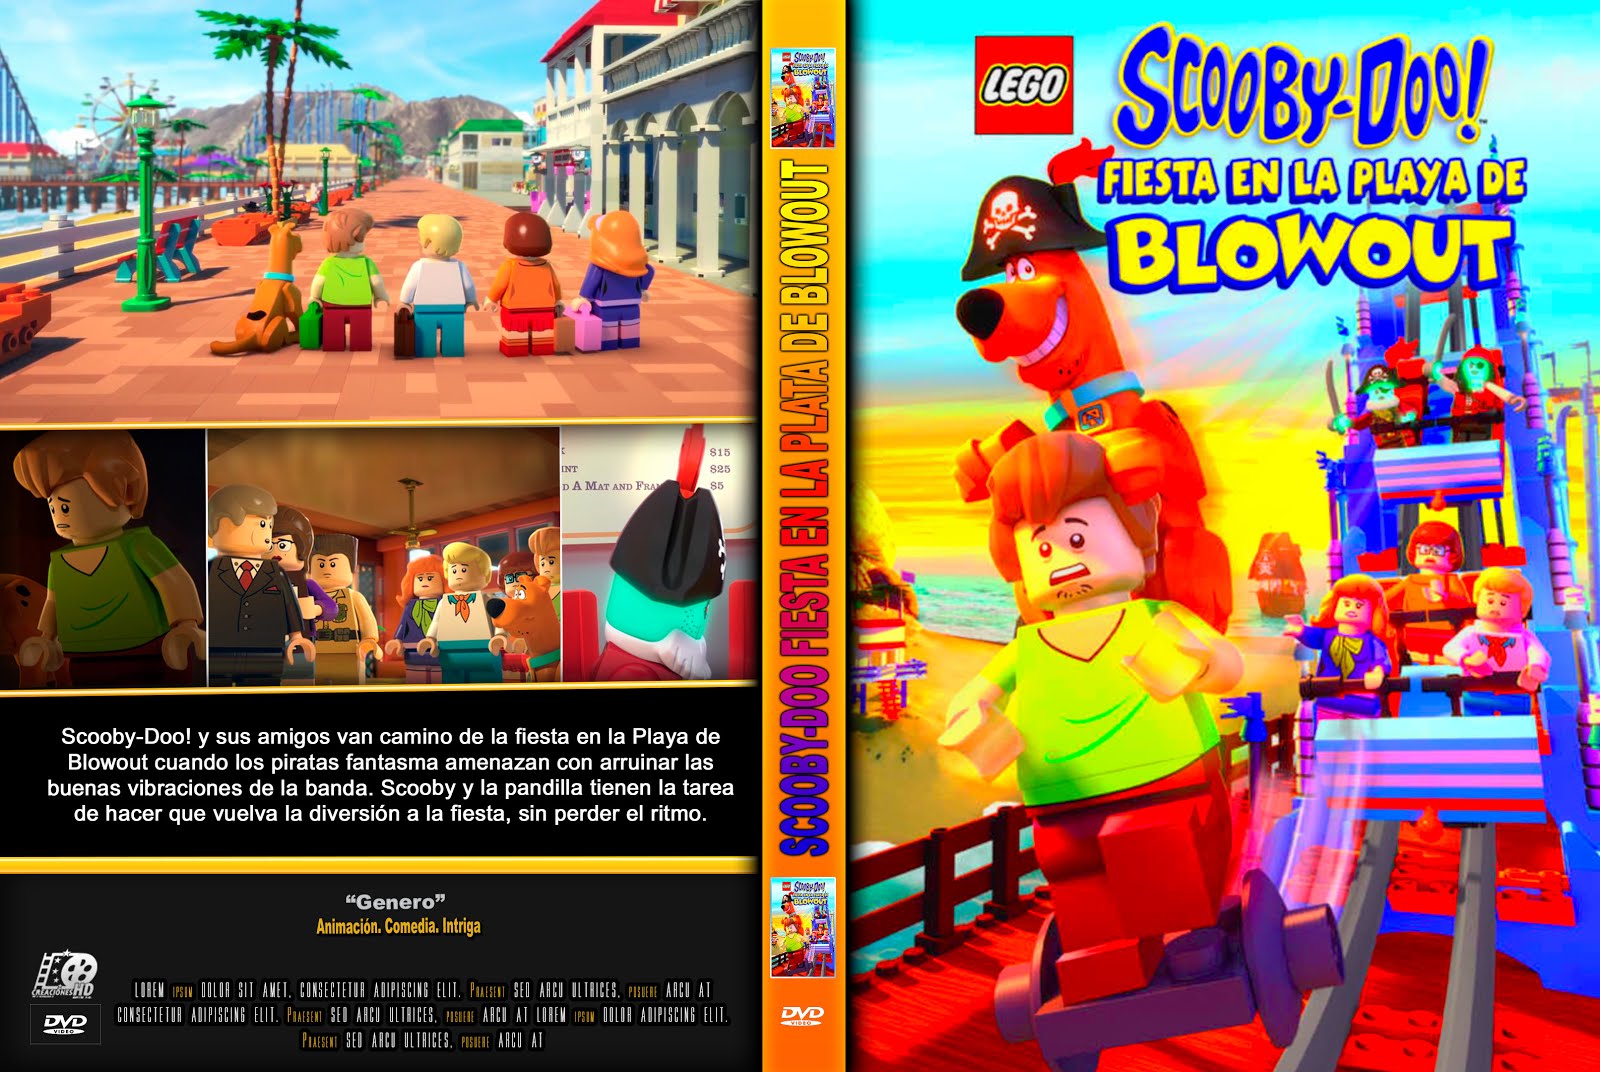 riodvd: Lego Scooby Doo - Fiesta En La Playa Blowout